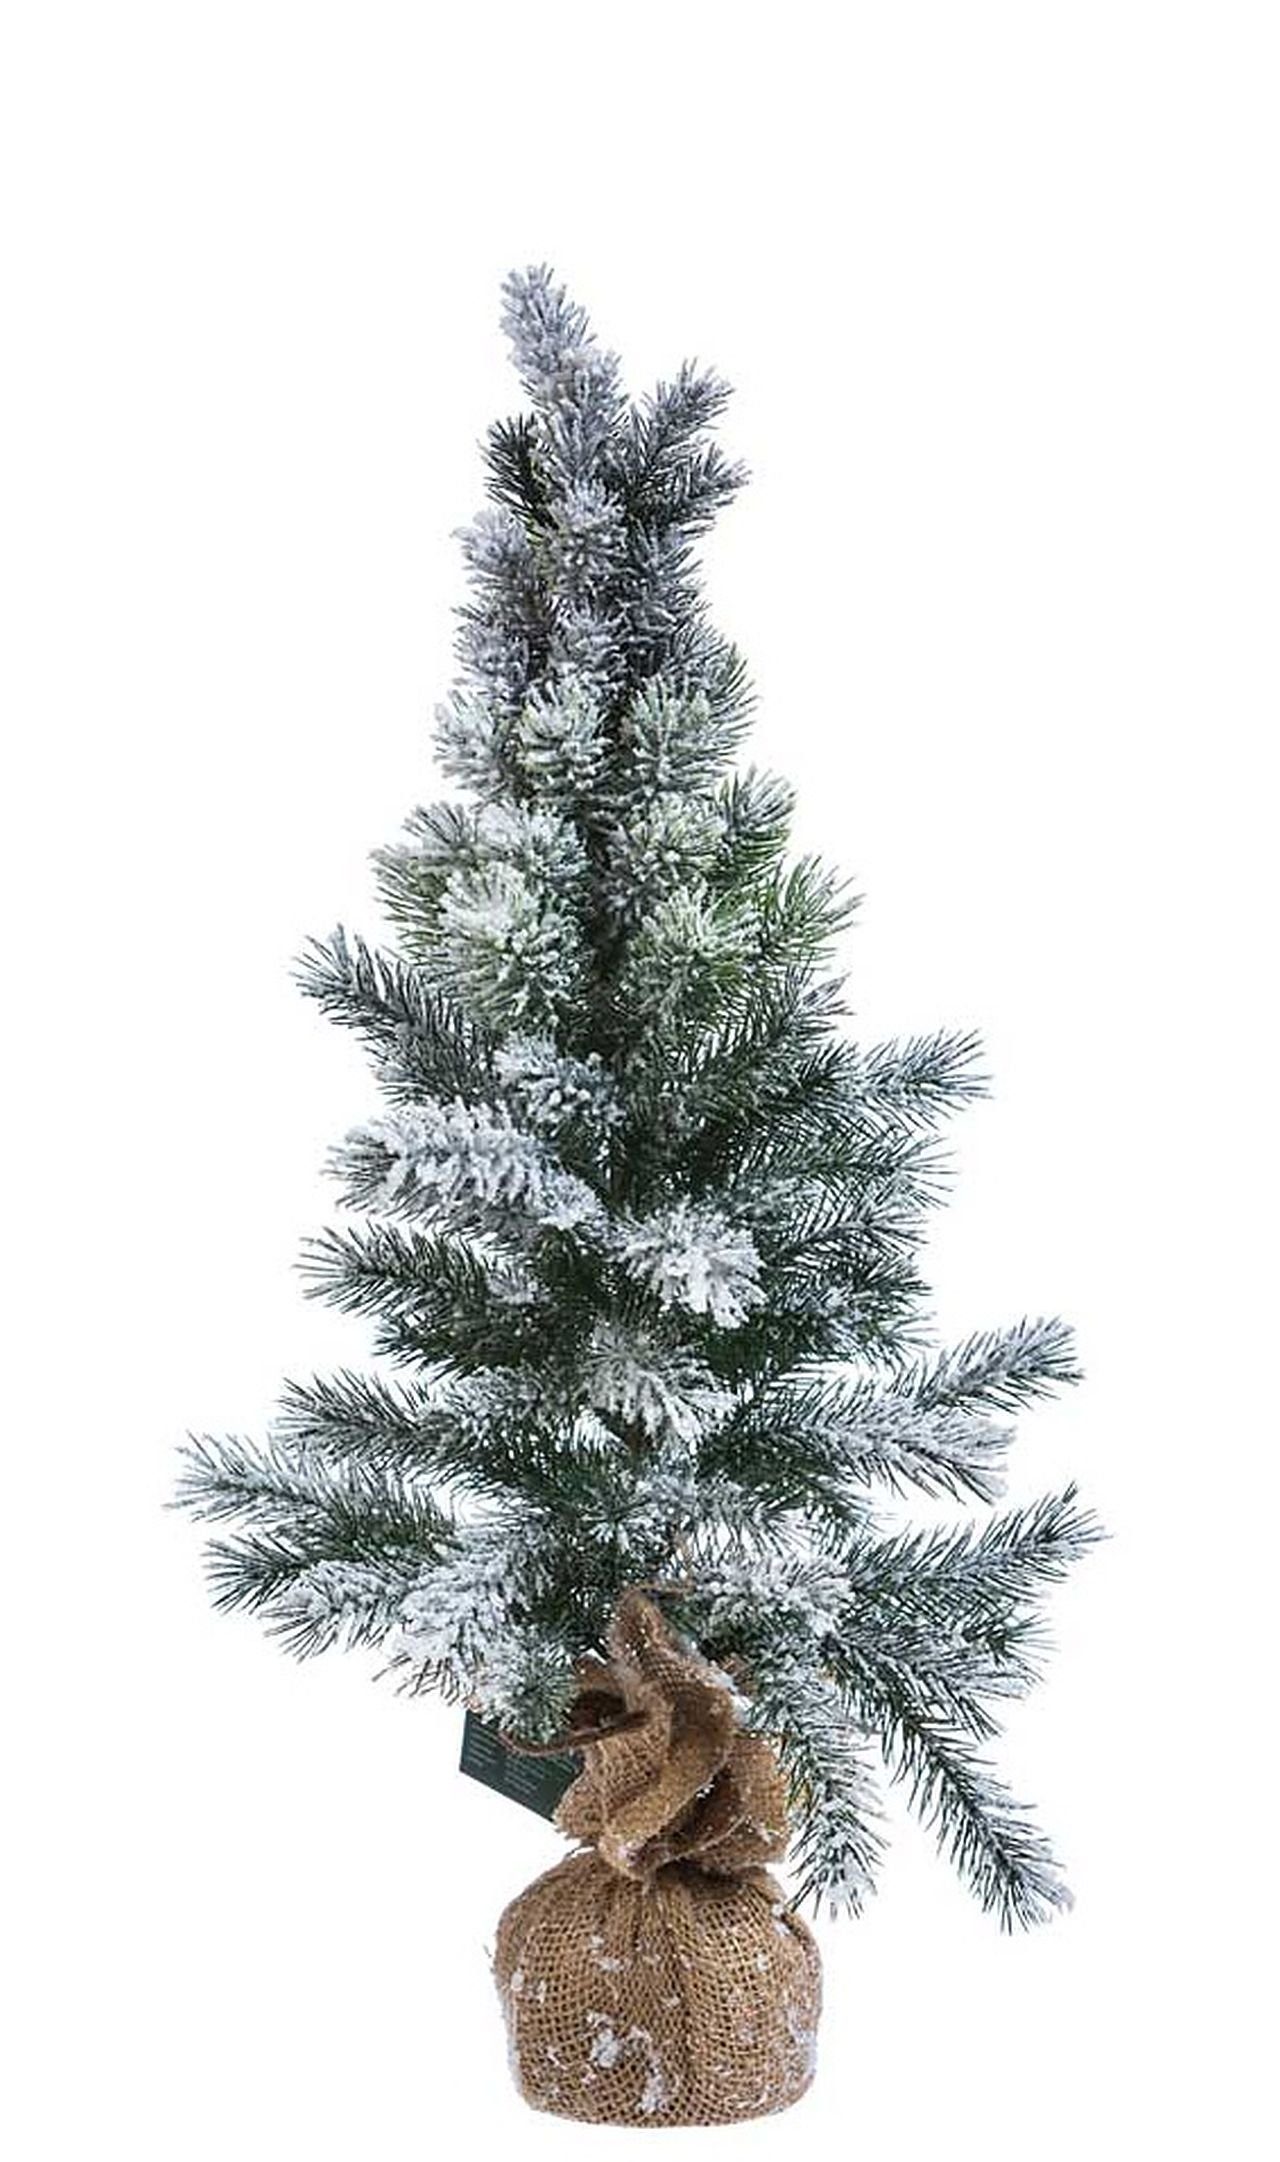 Small-Preis Künstlicher im beschneit in Fichte, Optik 3 Jute Weihnachtsbaum Sack verfügbar, Weihnachtsbaum Beschneite Größen